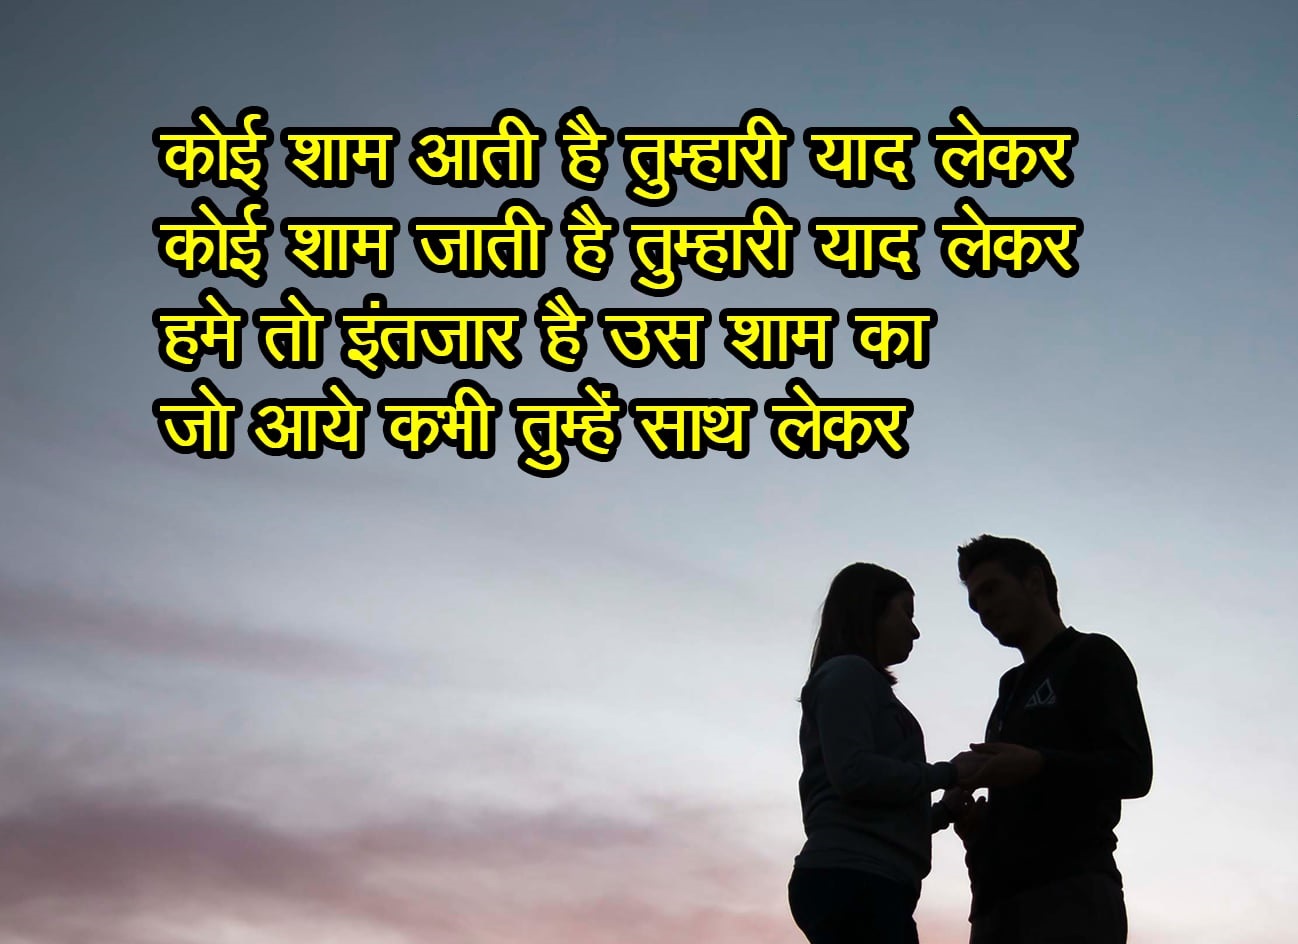 Top 10 Love Shayari In Hindi A2zshayari